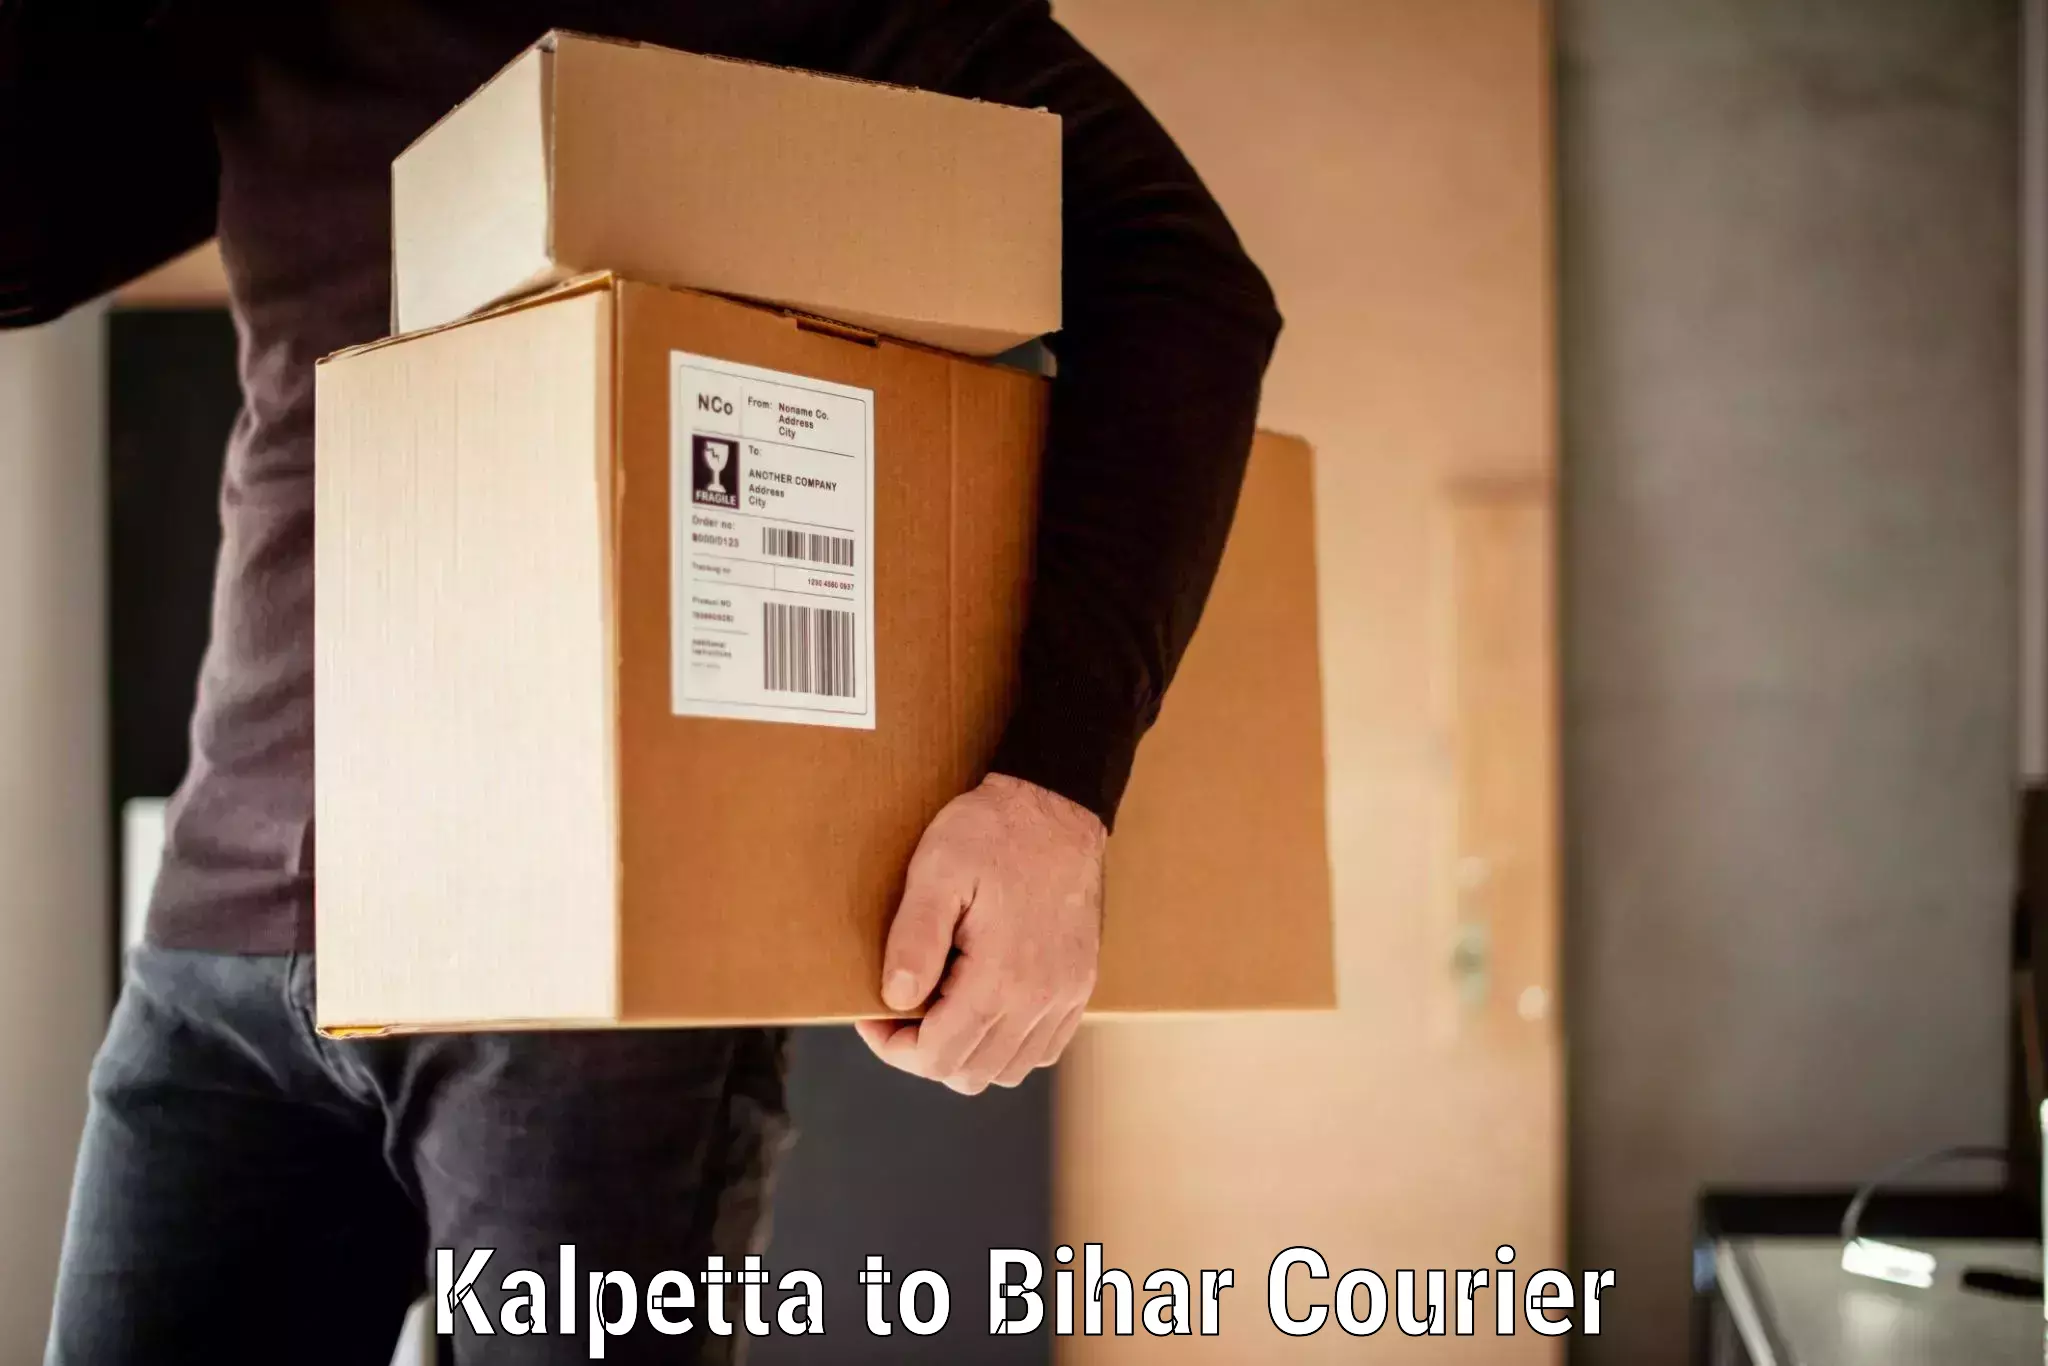 Baggage transport scheduler Kalpetta to Bihar